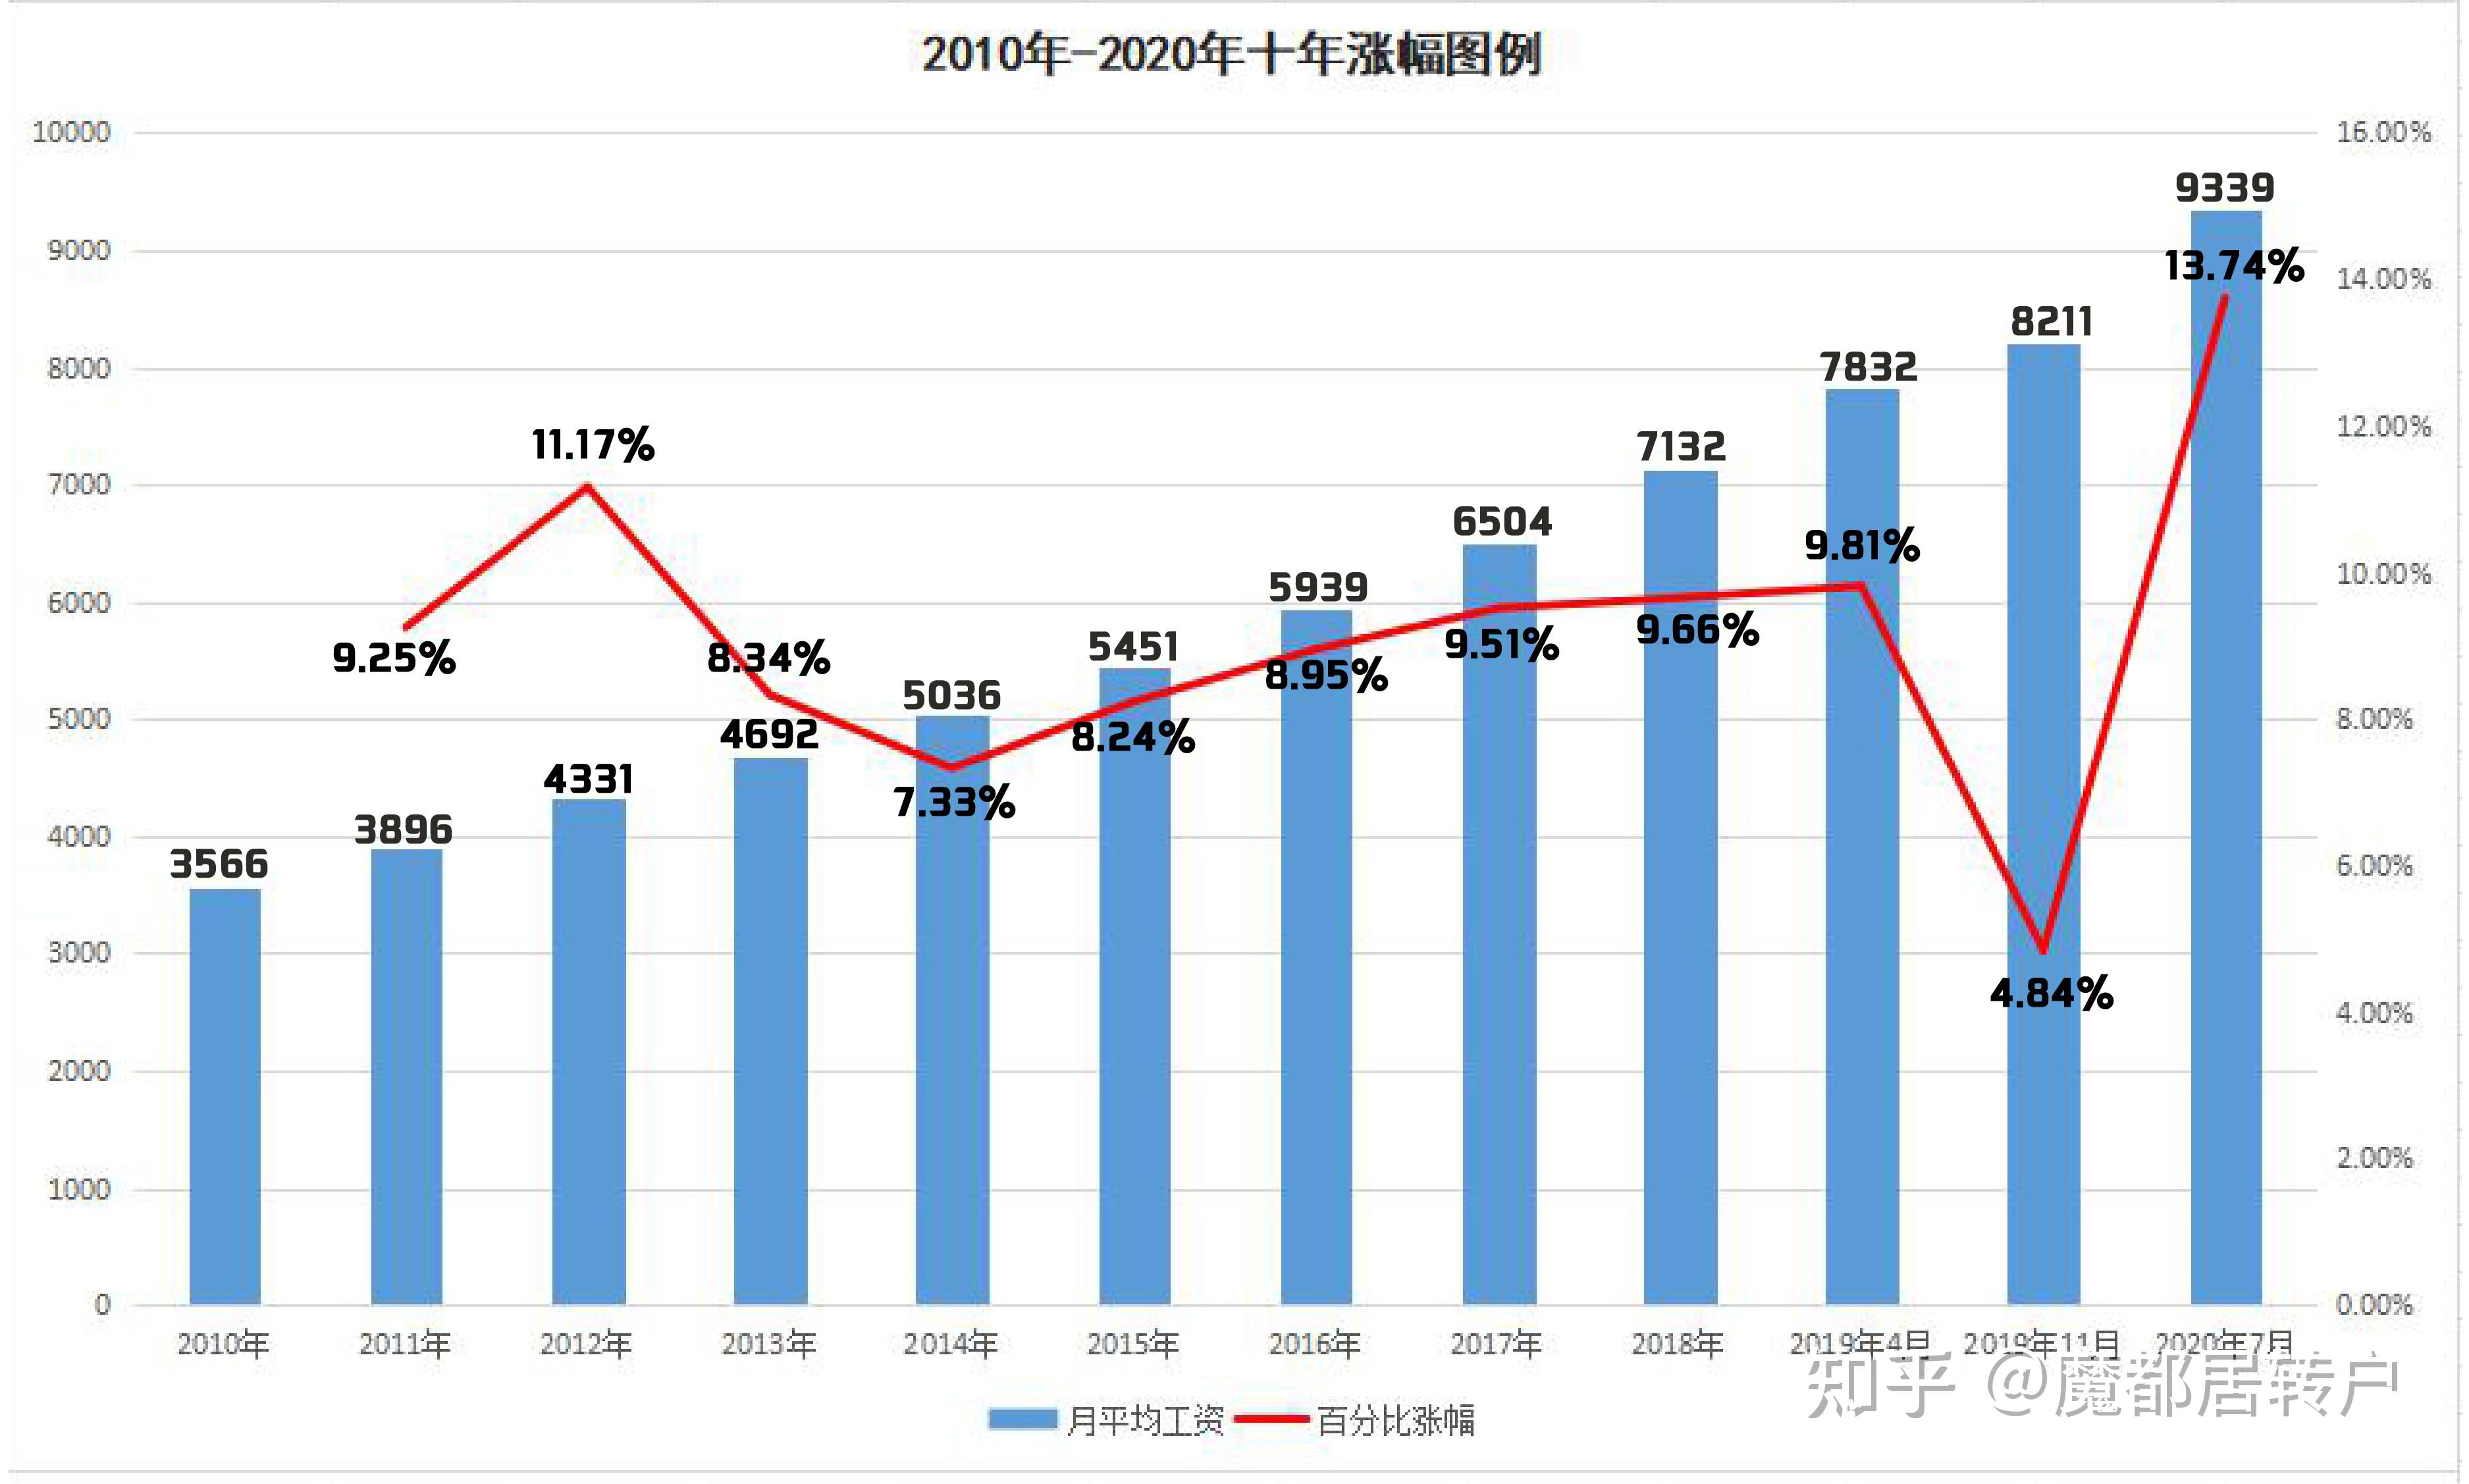 如何看待上海第七次全国人口普查数据公布「十年间上海增长185万人」?